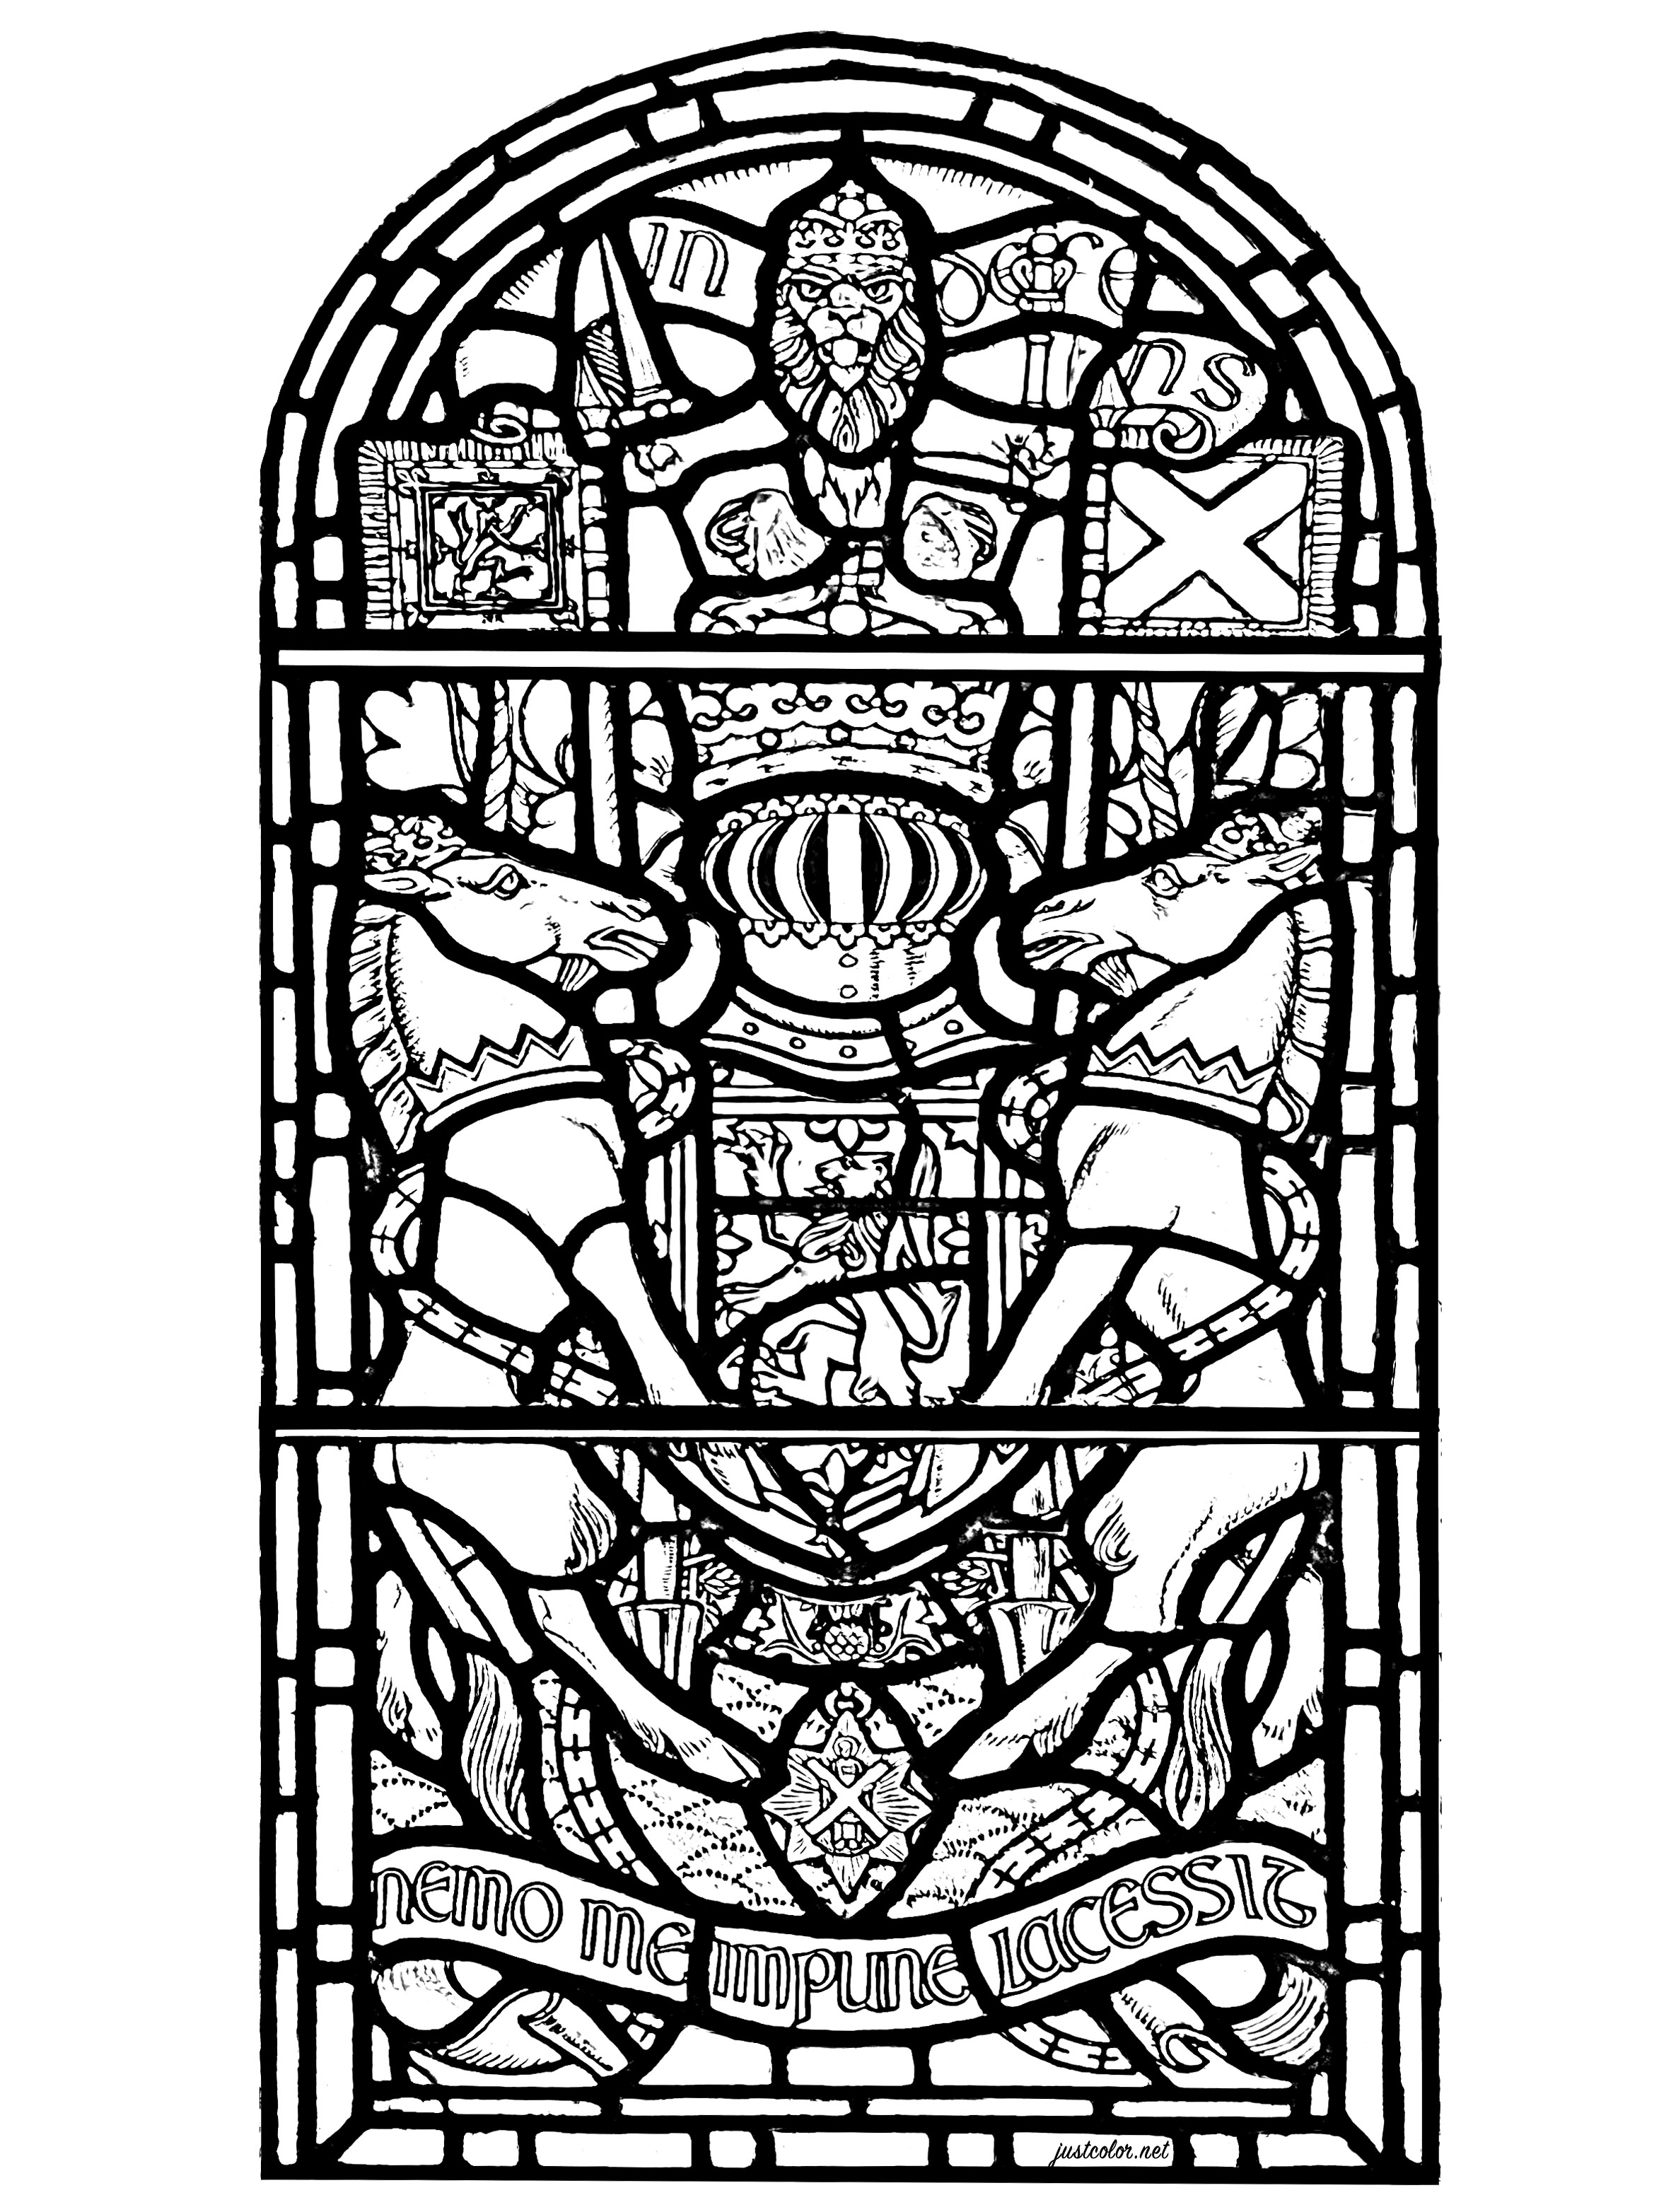 Vitrail du Château d'Edimbourg en Écosse. Ce vitrail représente divers symboles de l'Écosse, ainsi que le texte 'Nemo me impune lacessit', qui est la devise latine de l'Ordre du Chardon.Elle apparaît sur les armes royales du Royaume-Uni présentes en Écosse. Cela signifie 'Nul ne m'offense impunément'